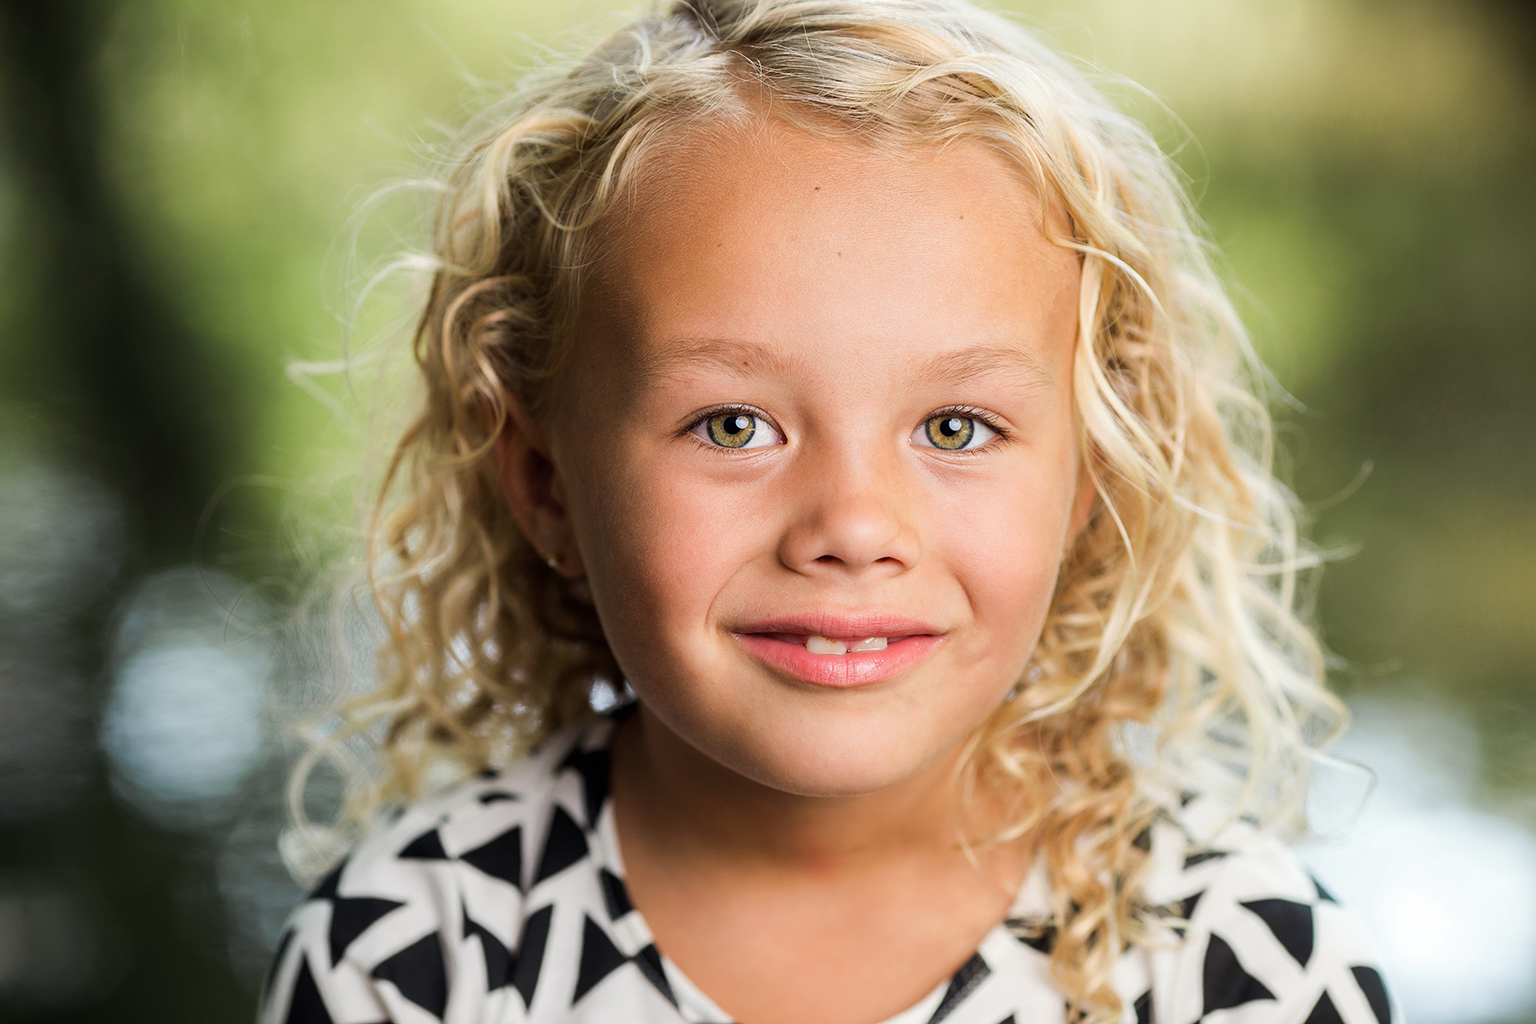 Utah Headshot Photographer | Children's Headshot Photographer | Utah Portraits | Child Photographer | Kids Photographer | Headshots | Children's Portrait Photographer | Child Photography | Sara Vaz Photography